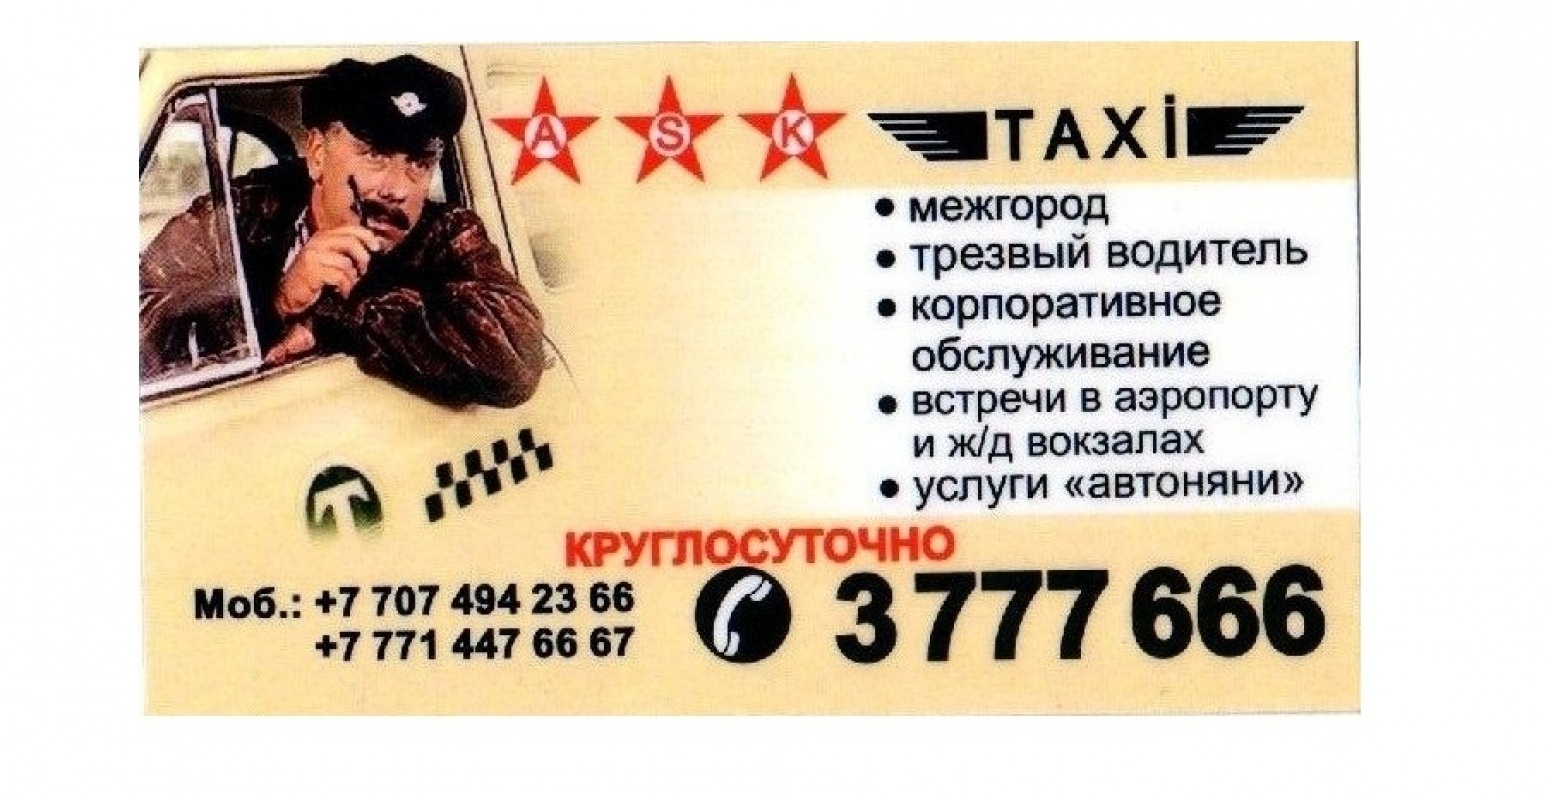 Фото ASK - Алматы. Такси "ASK"! Вызов такси Круглосуточно! 